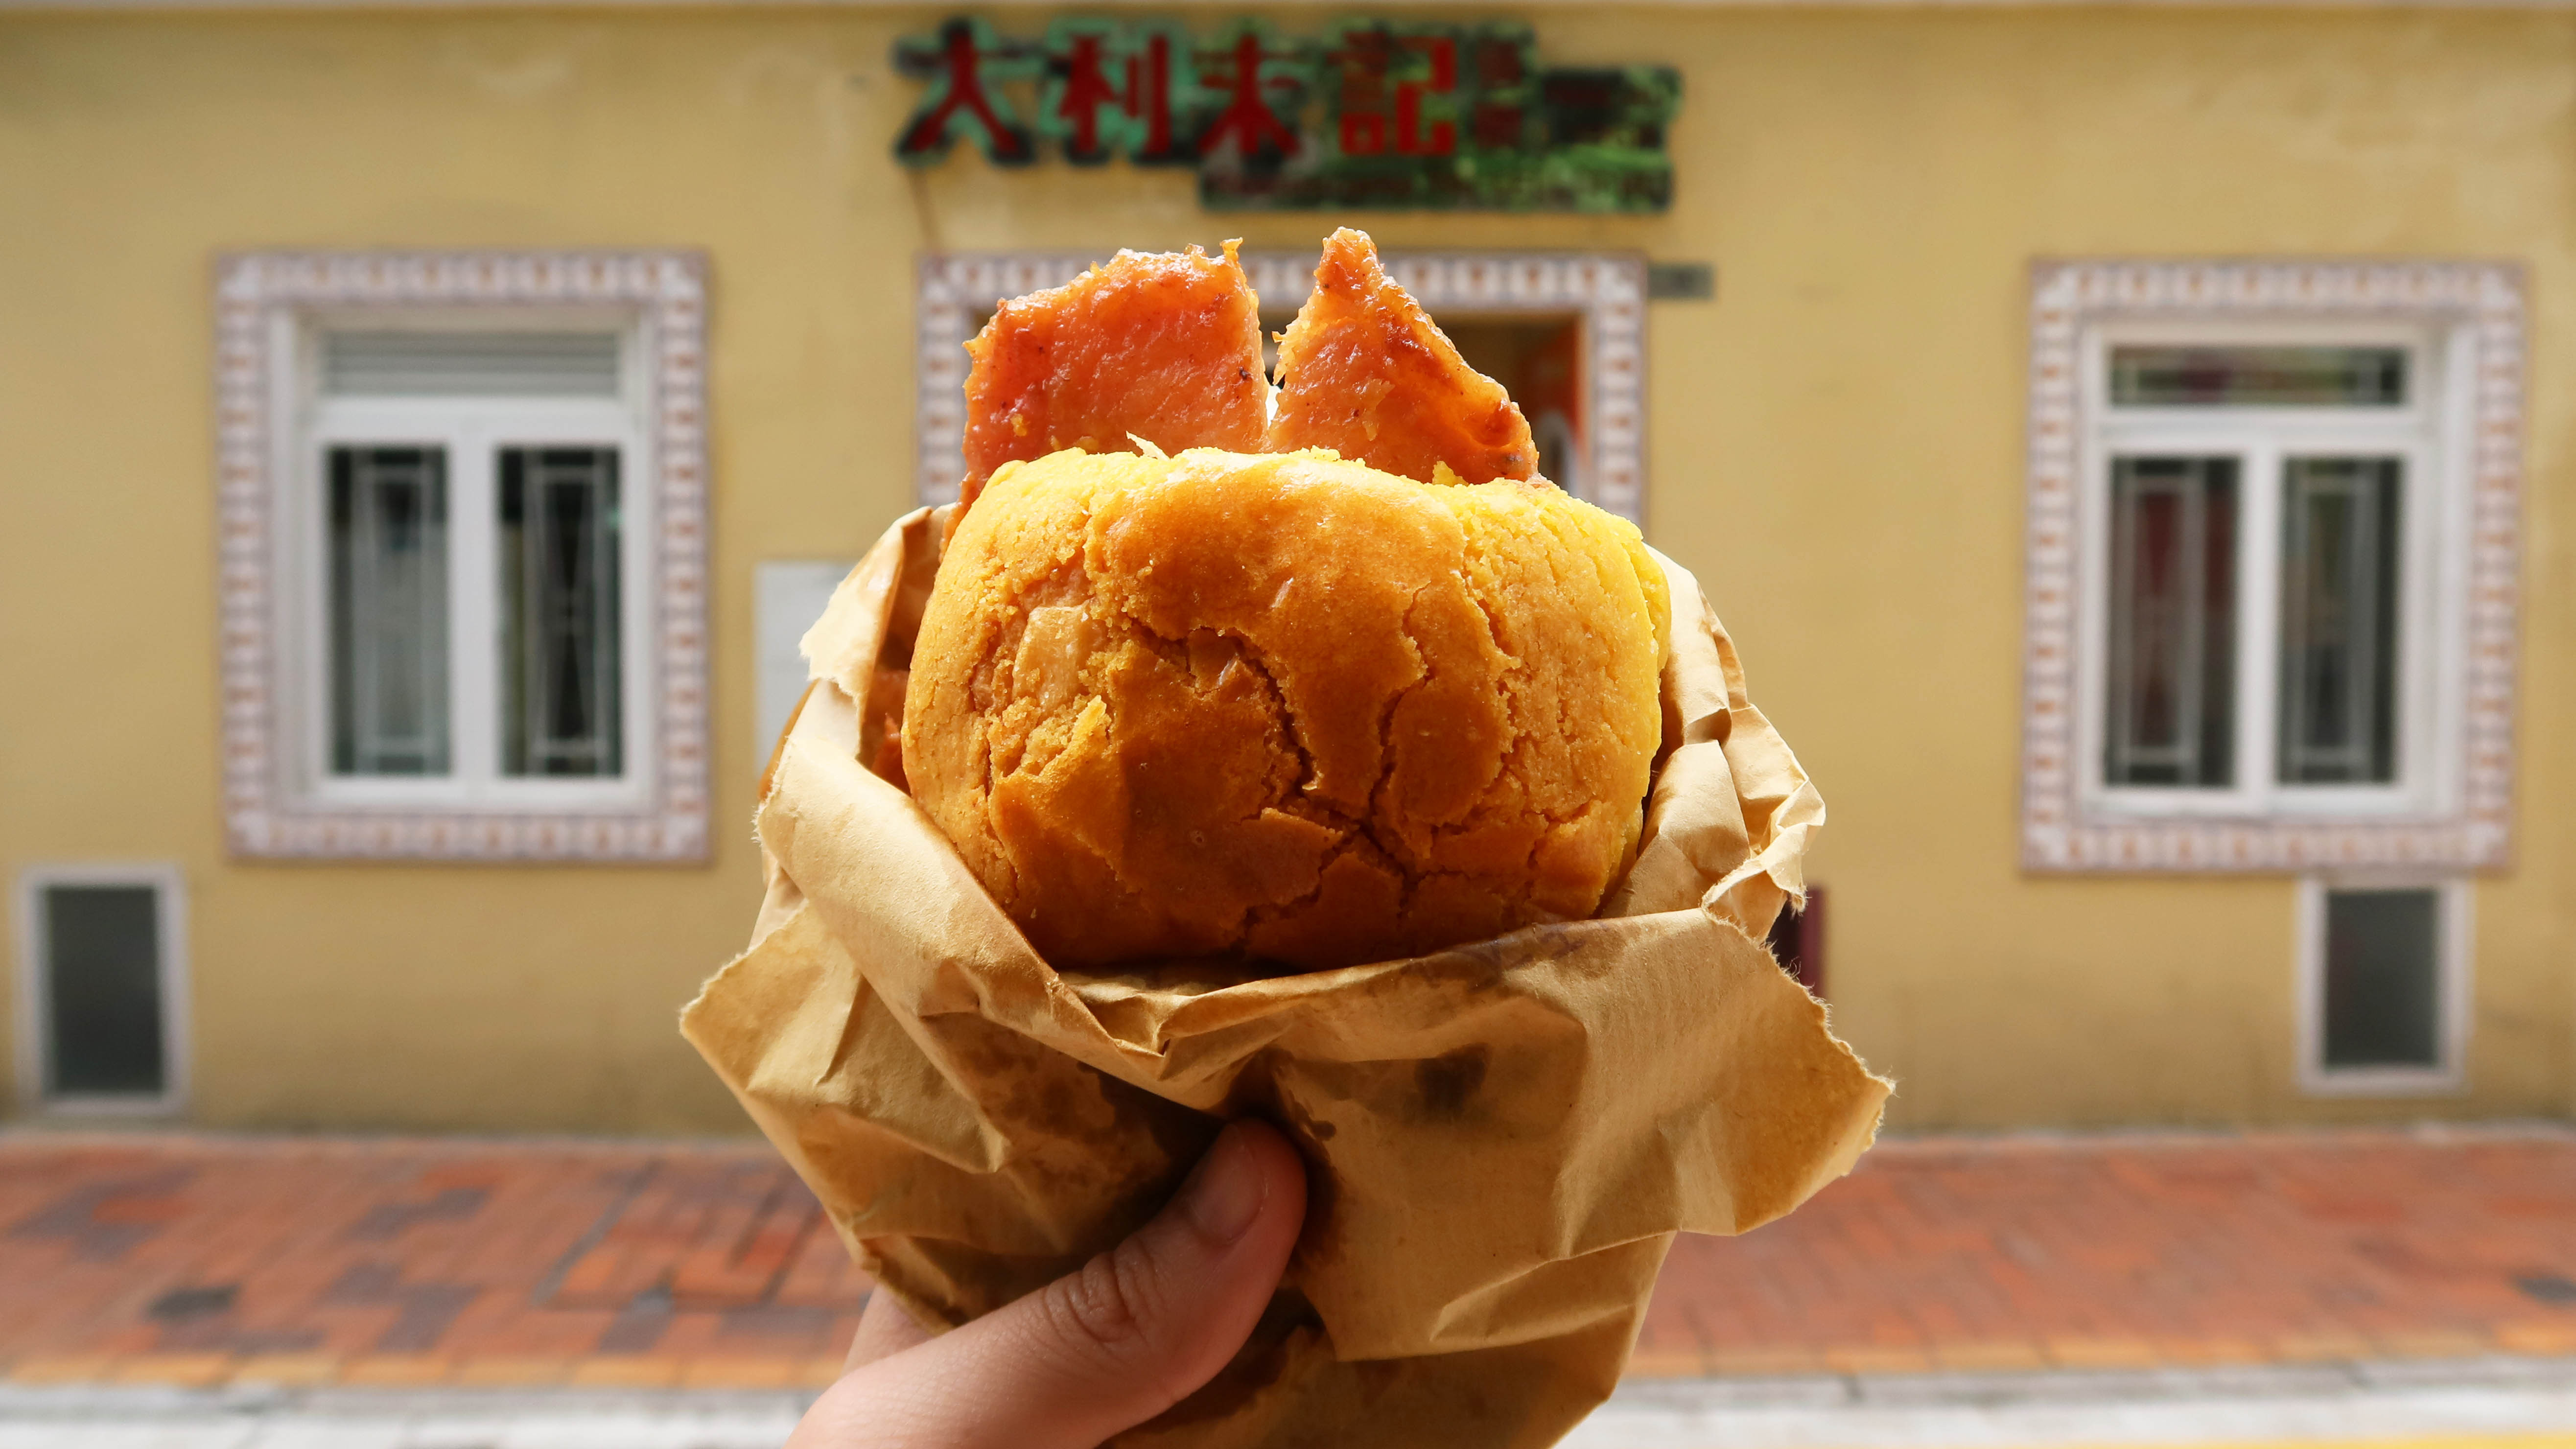 Macau dishes pork chop bun